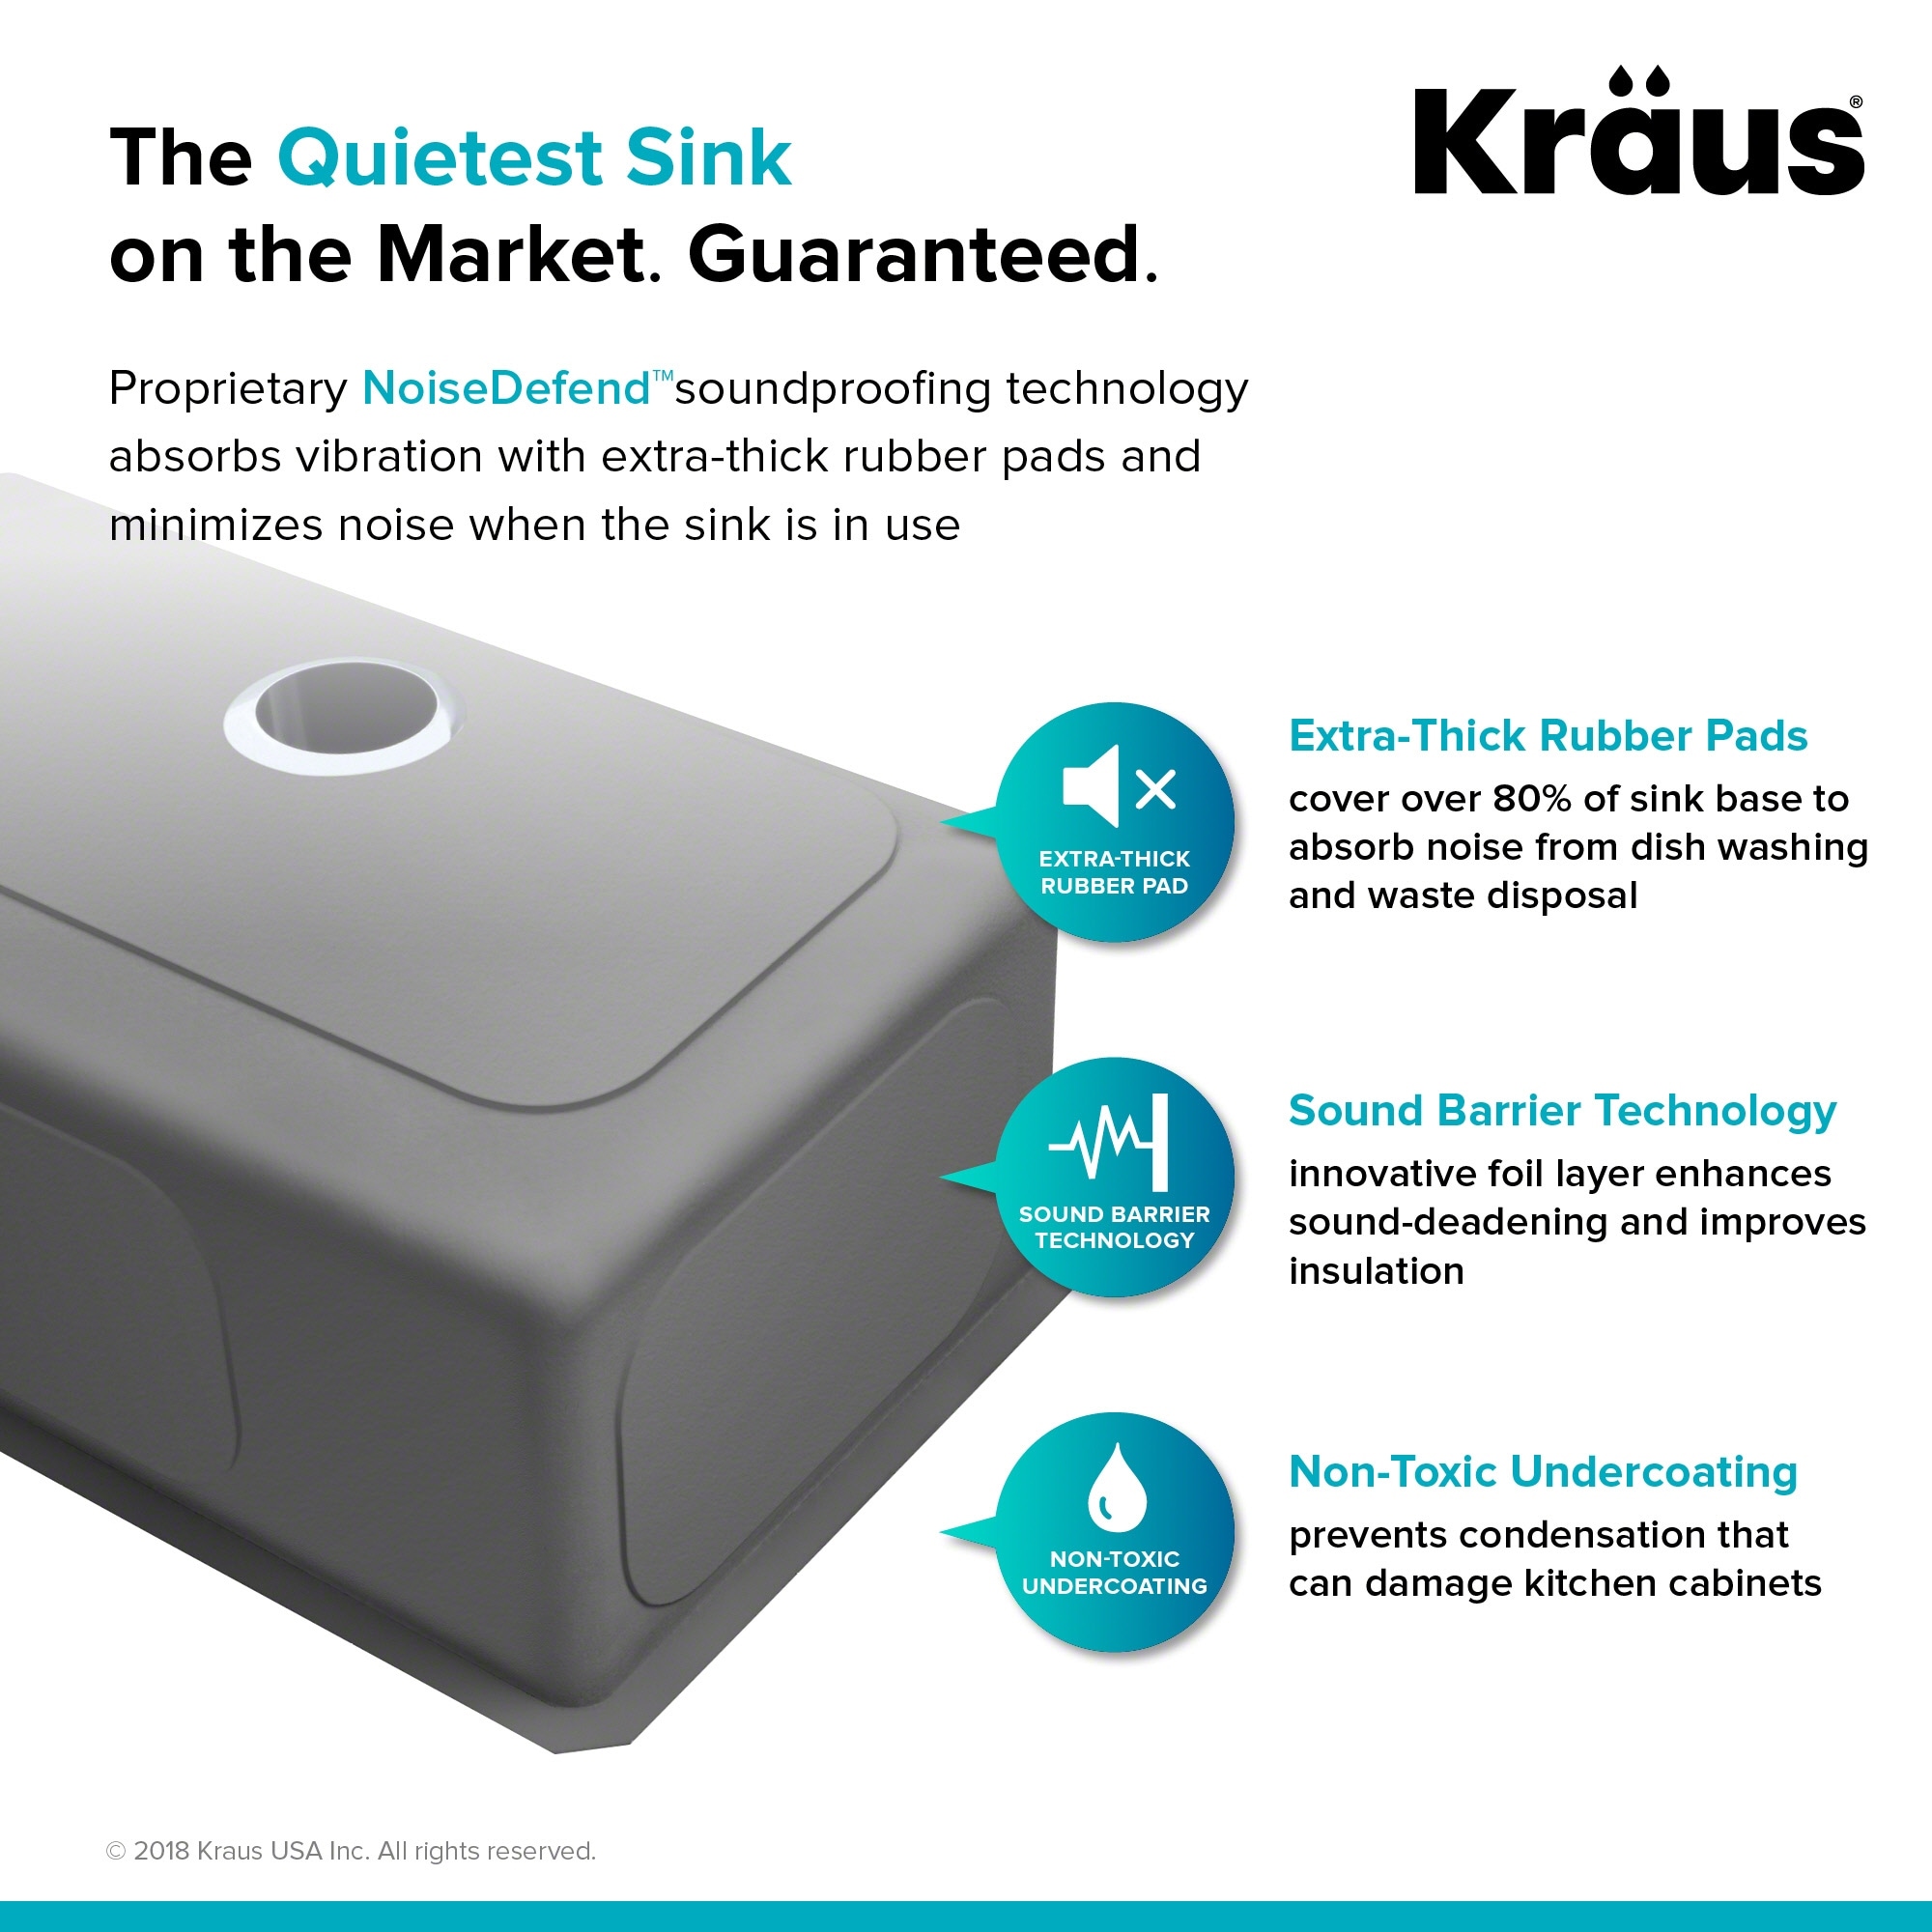 KRAUS Standart PRO Stainless Steel 23 inch Undermount Kitchen Sink On  Sale Bed Bath  Beyond 3730988